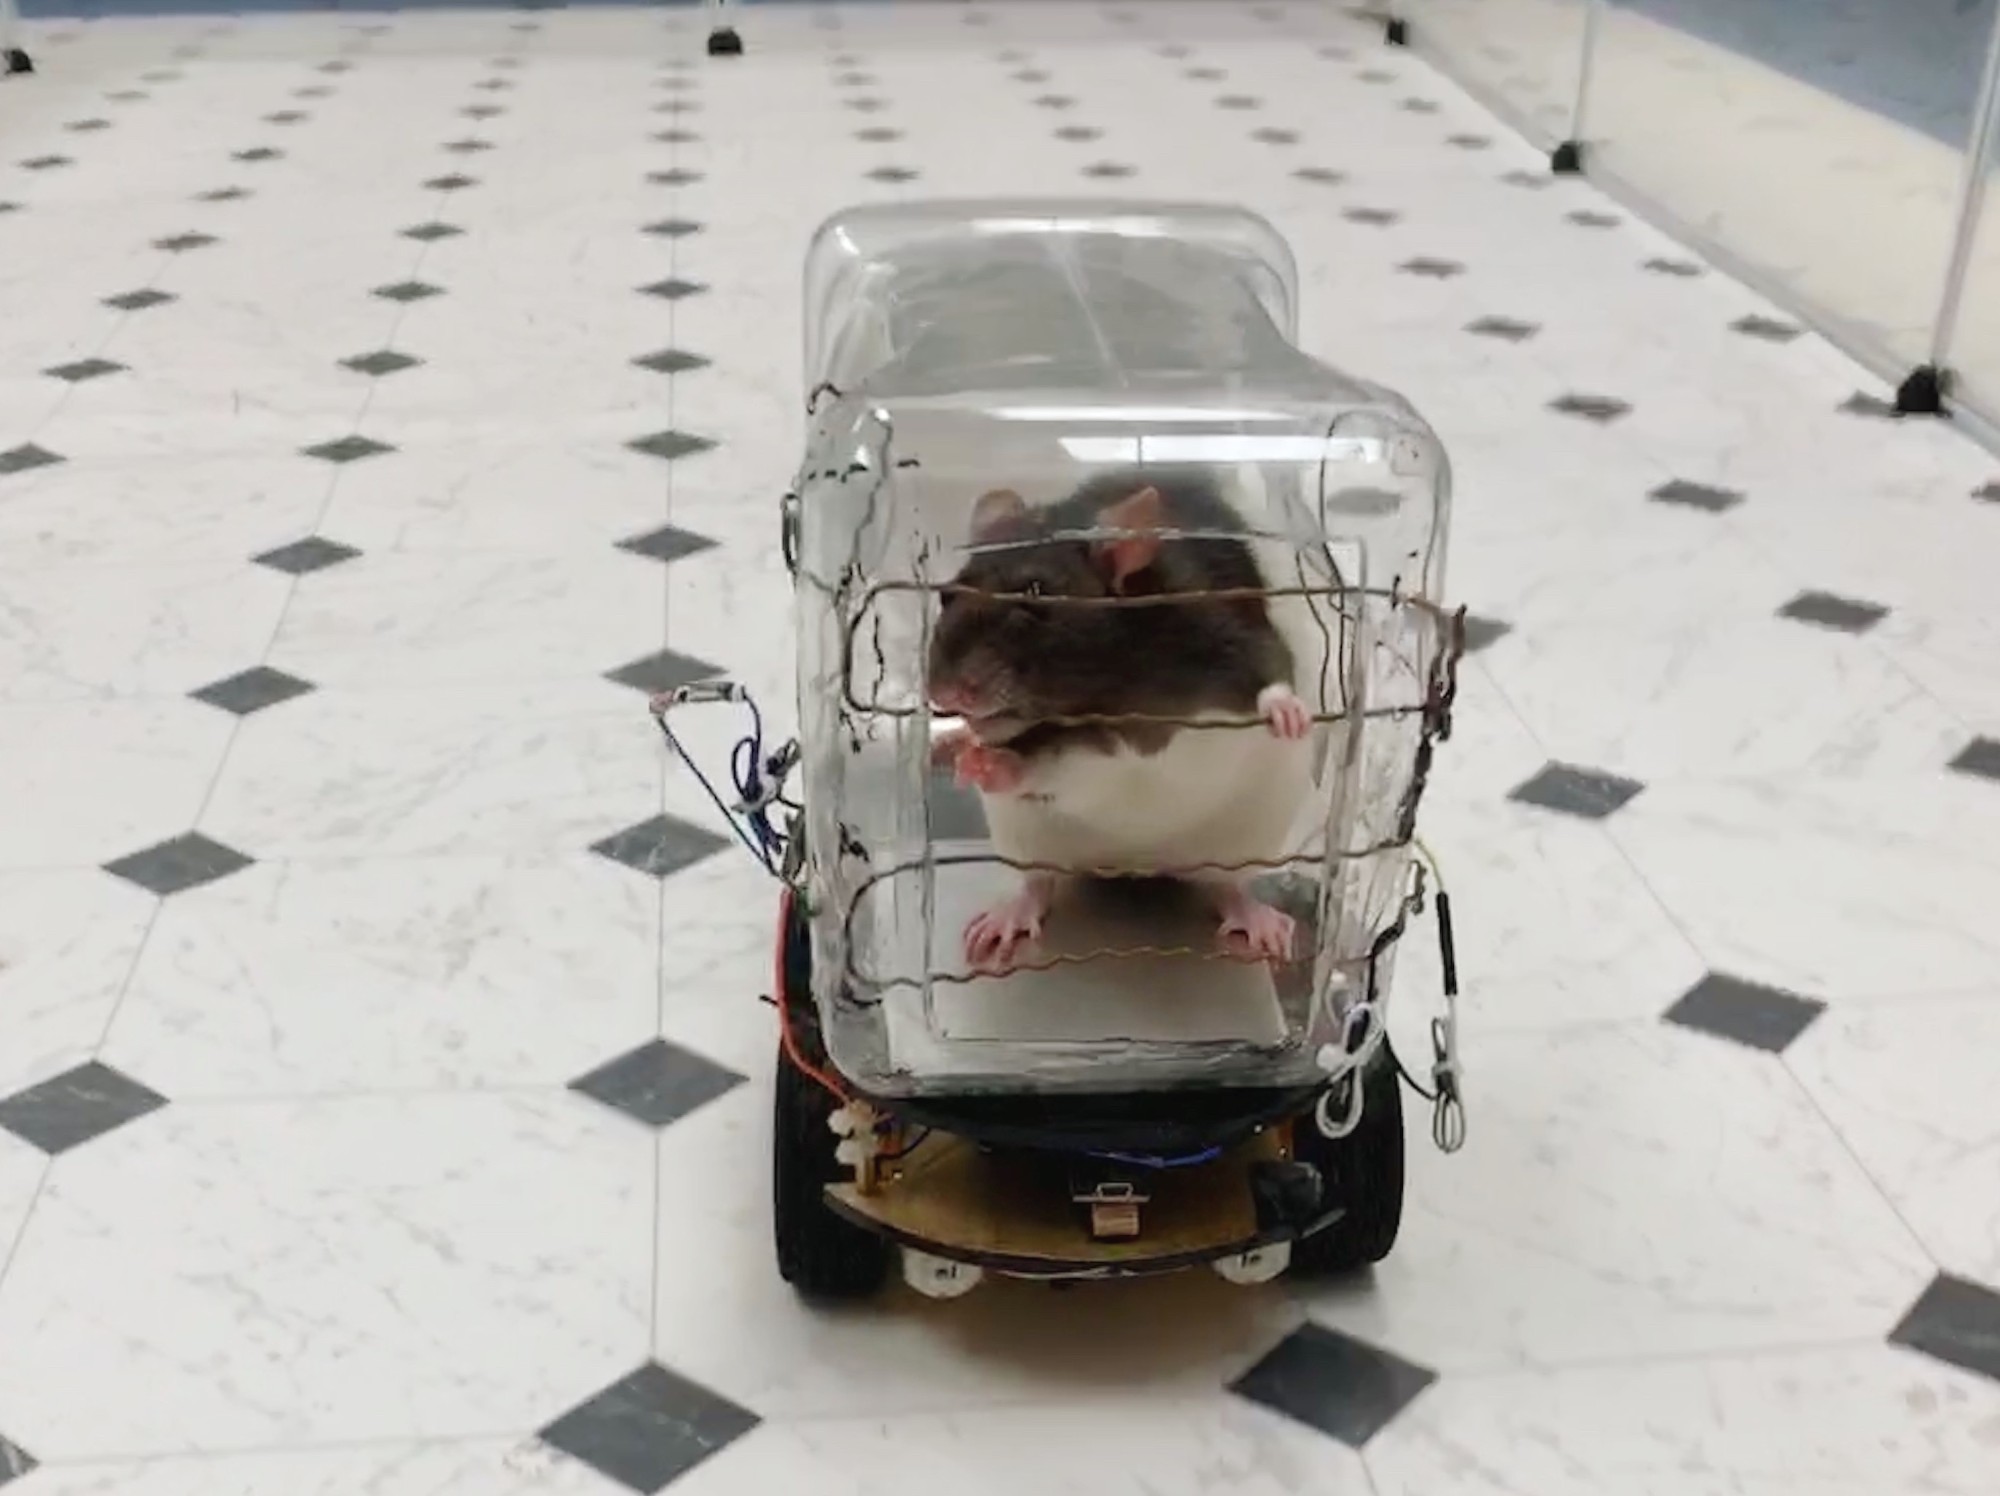 🇺🇸 Des chercheurs ont appris à des rats à conduire des mini-voitures